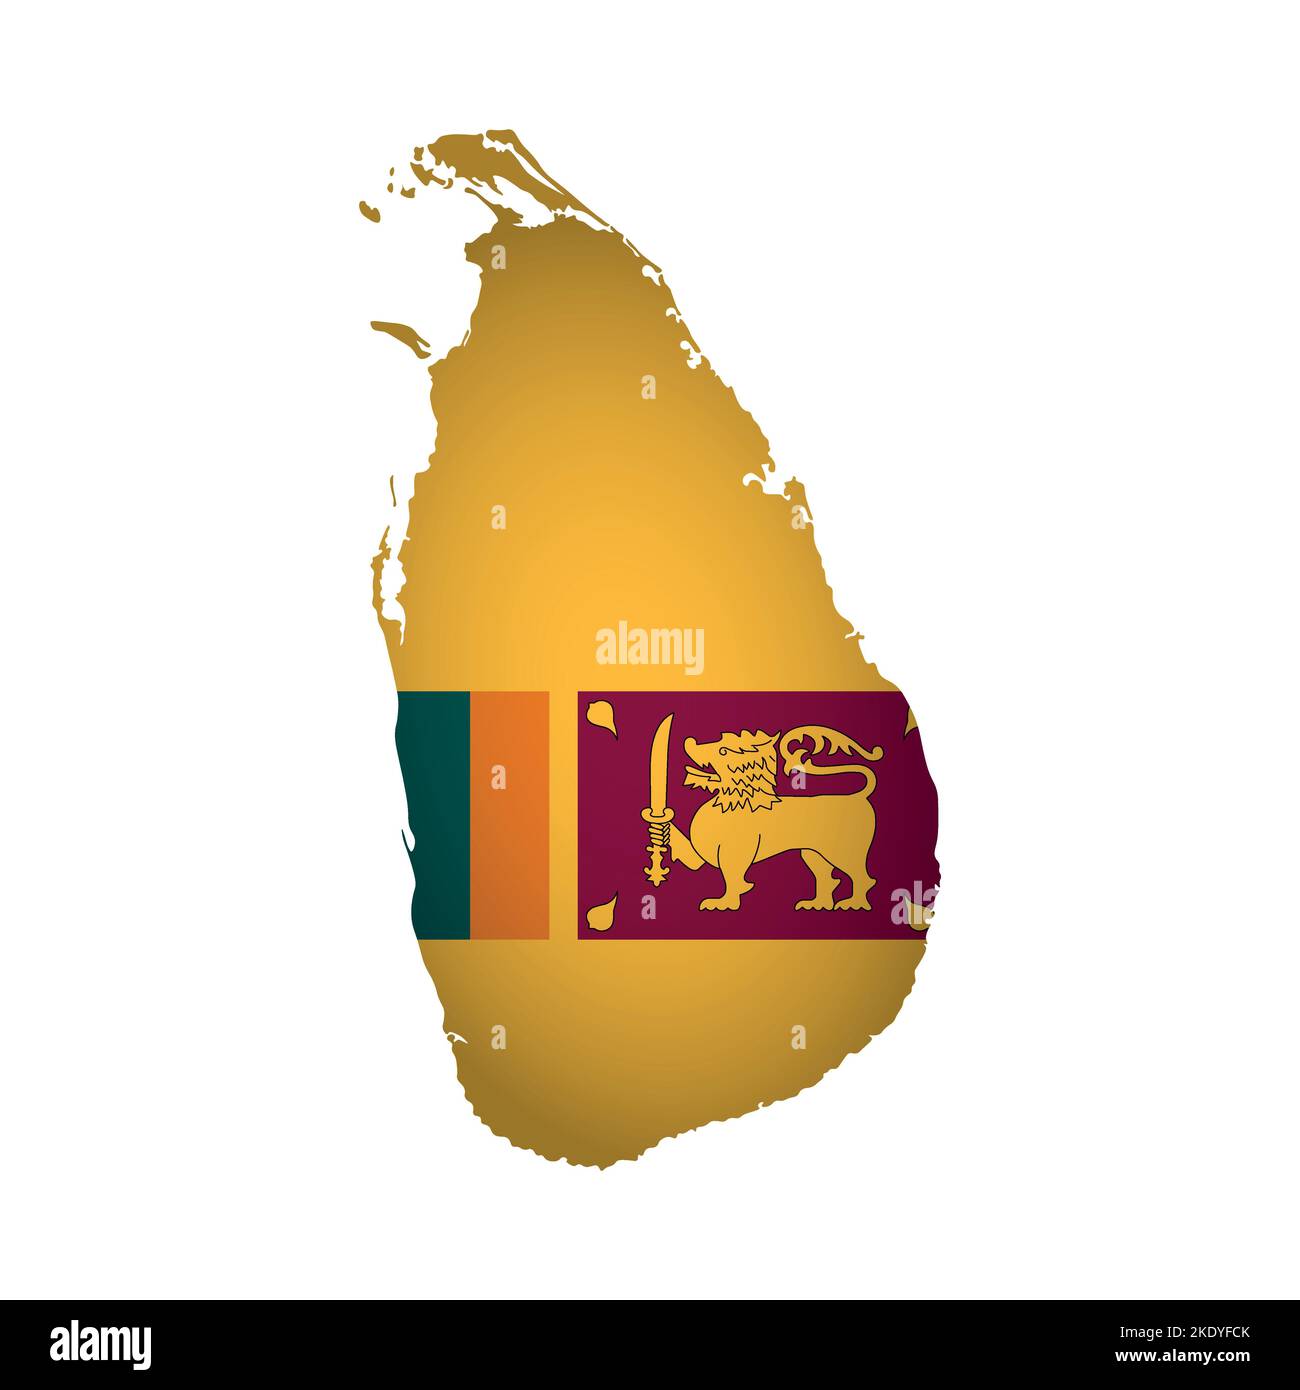 Illustrazione con isolamento vettoriale. Firma ufficiale sulla mappa dello Sri Lanka. Bandiera nazionale con leone dorato su sfondo colorato. Design creativo in poligonale Illustrazione Vettoriale